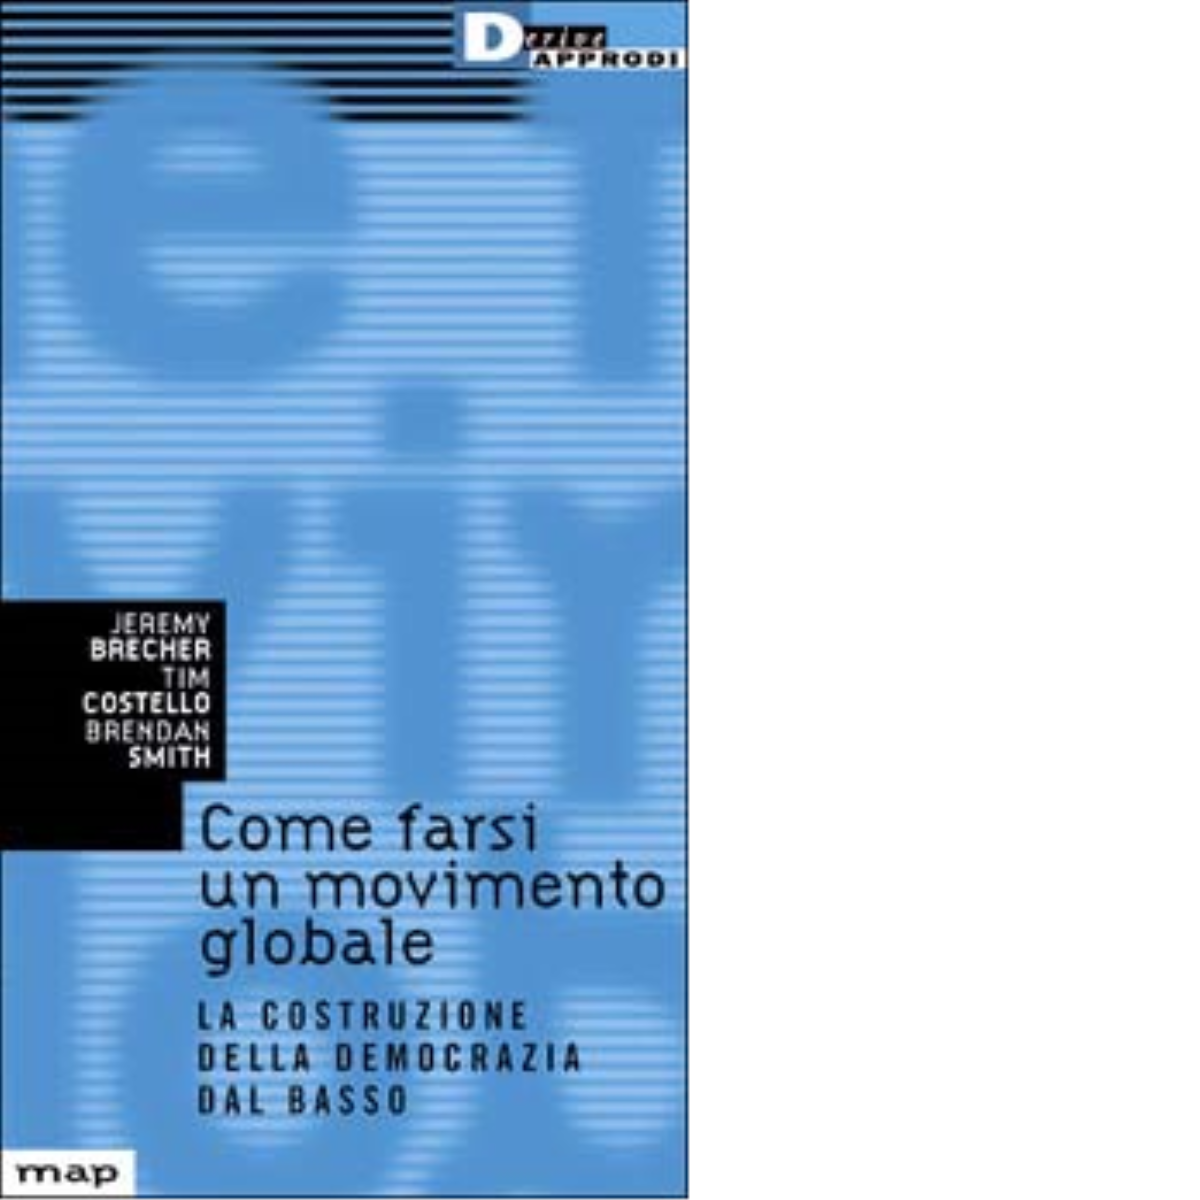 COME FARSI UN MOVIMENTO GLOBALE. di JEREMY BRECHER - DeriveApprodi,2001